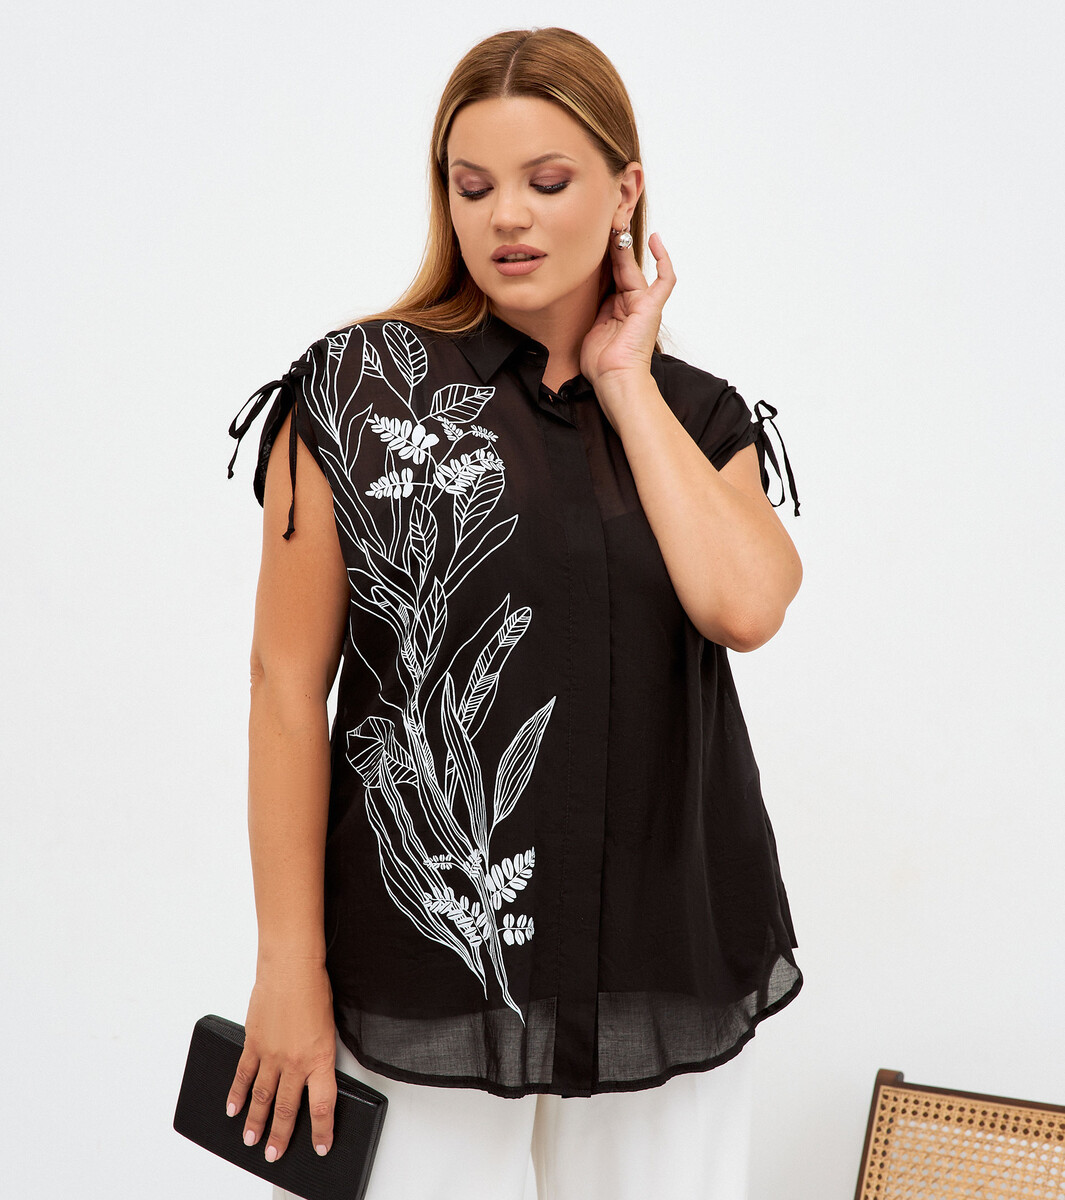 Комплект женский (туника, блузка) PANDA, размер 48, цвет черный 01182633 - фото 2